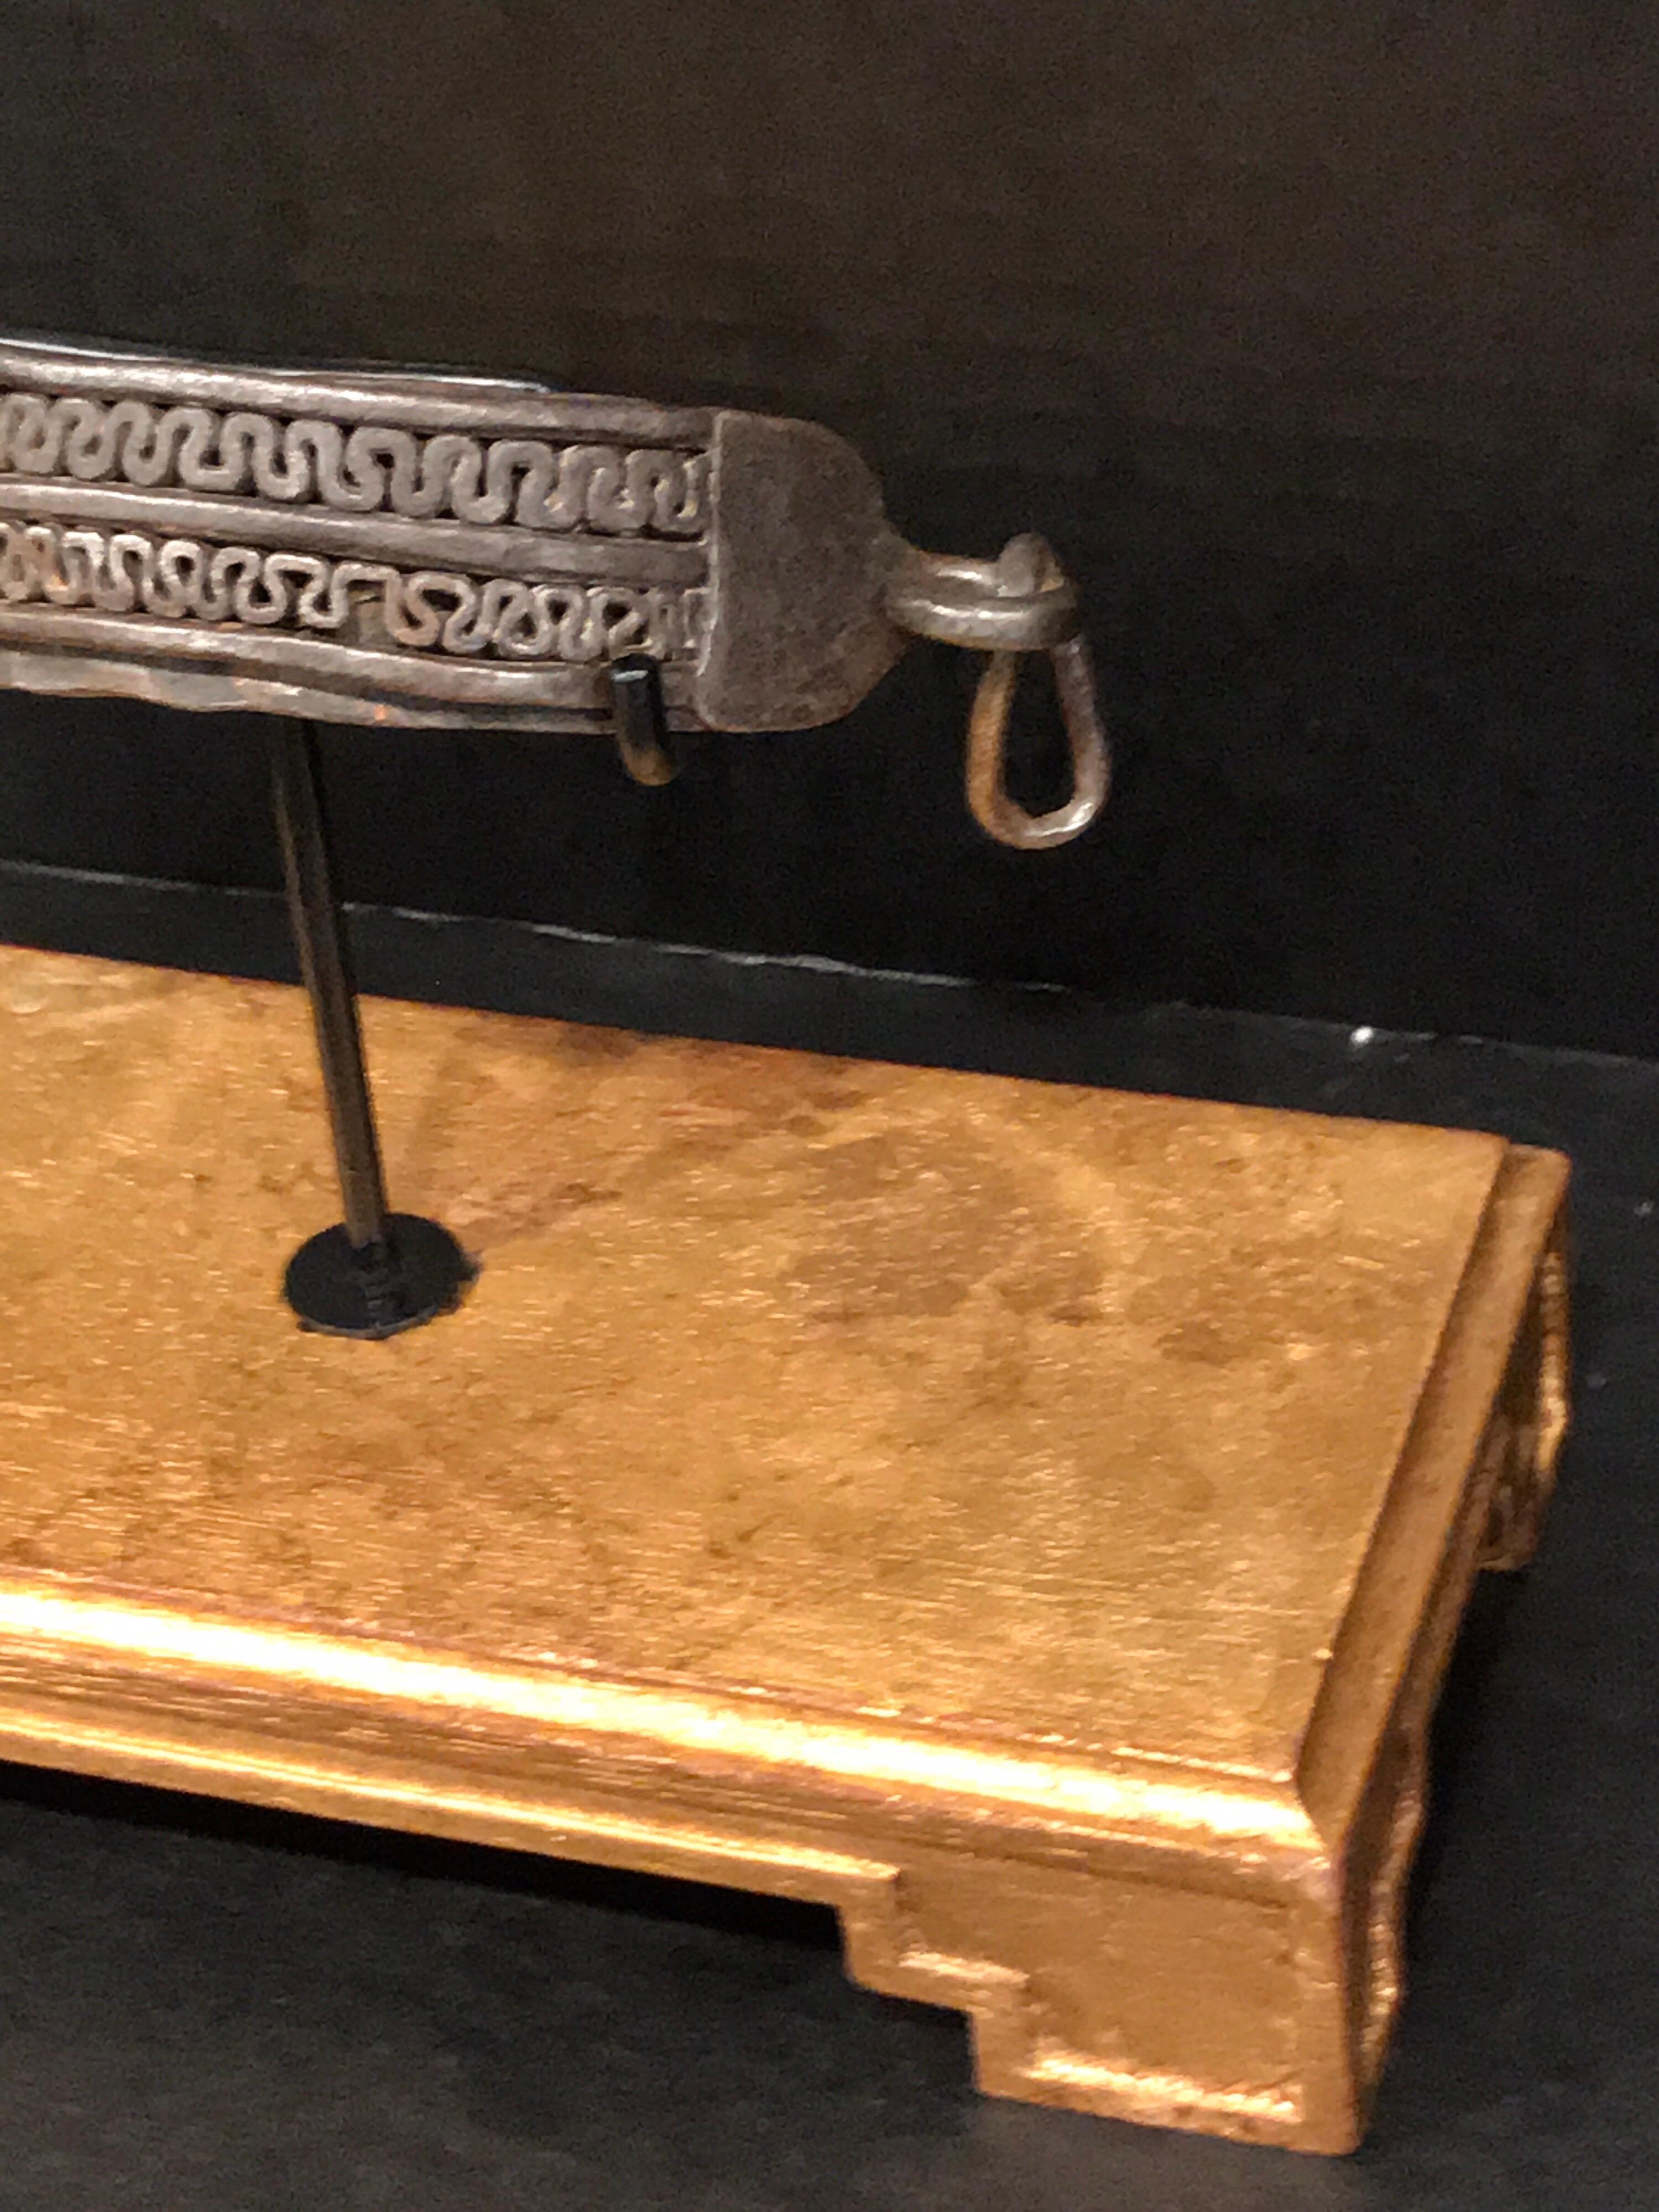 Collier de chien en fer du 17e siècle, monté sur une base rectangulaire en bois doré. Avec deux rangées de ferronnerie néoclassique. Le collier de 6